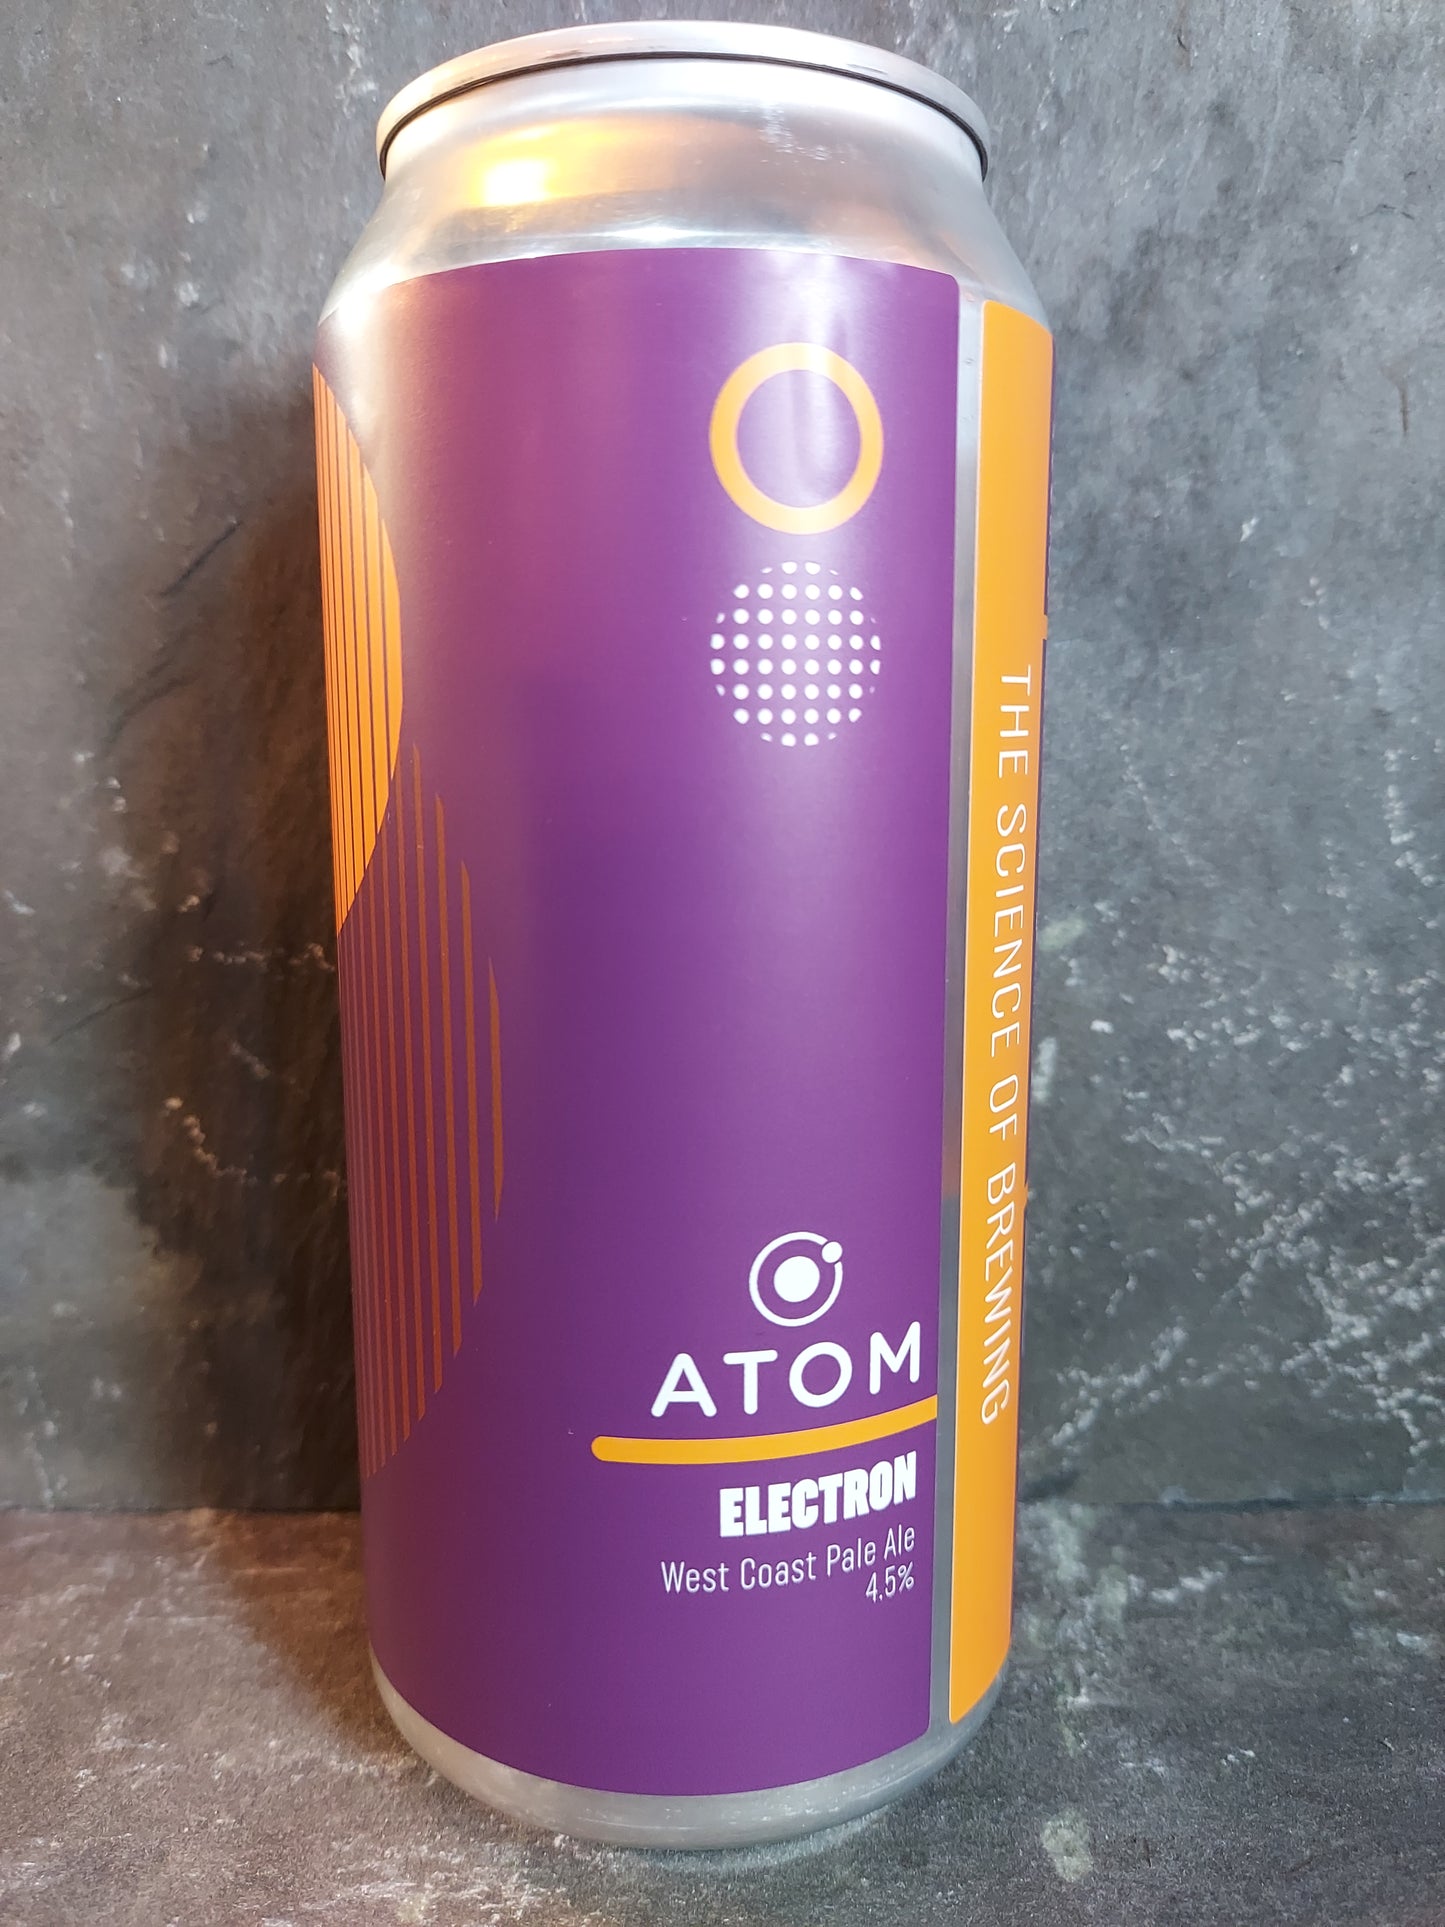 Electron - Atom